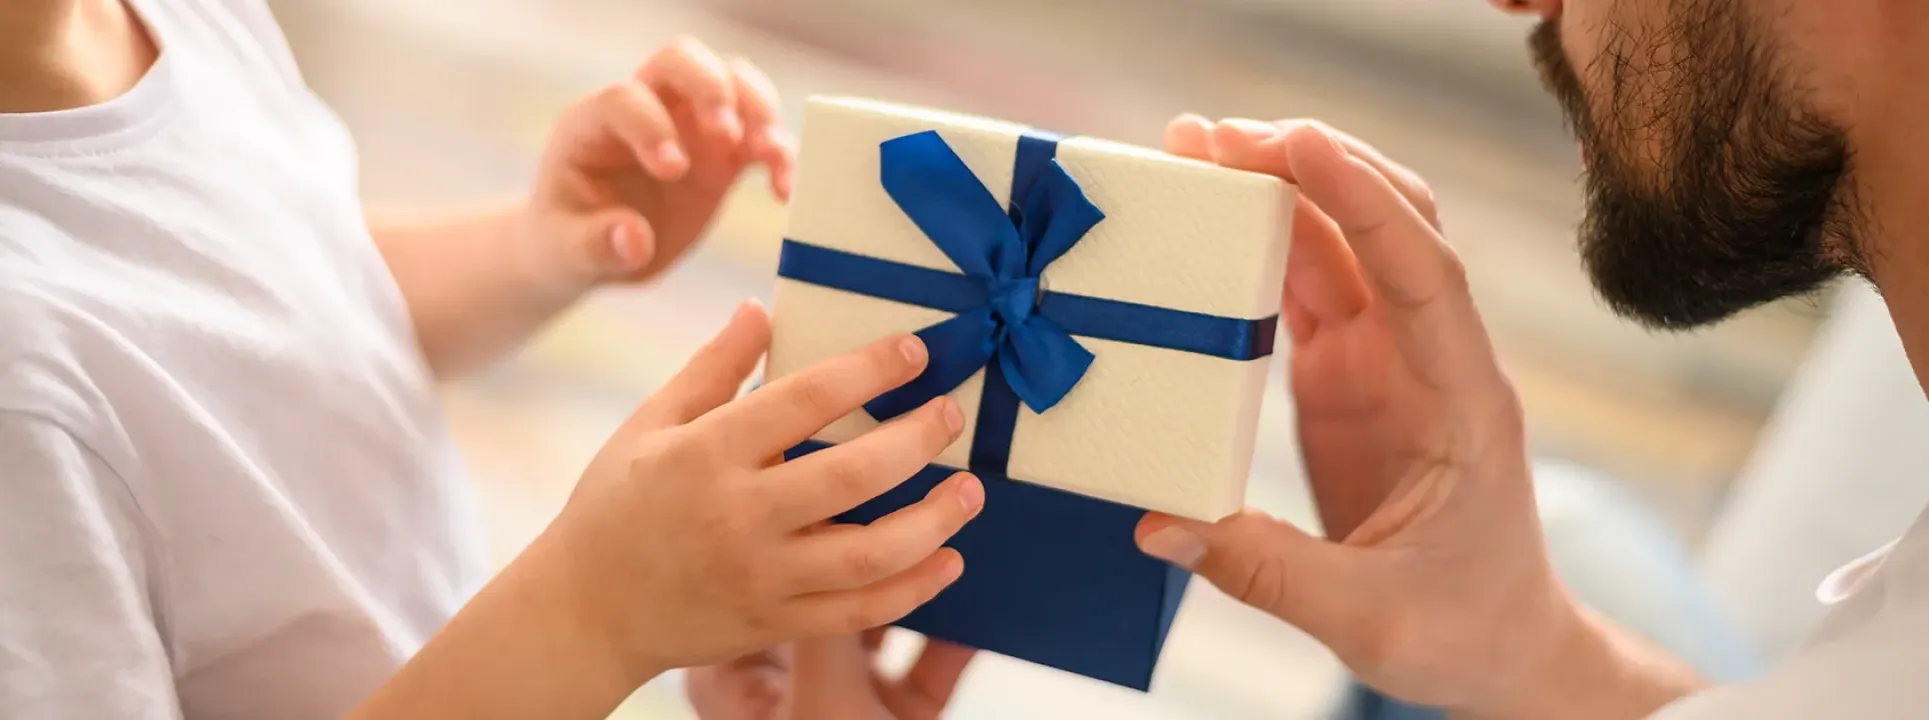 Cadeaux fête de père – 5 bonnes suggestions  blog post